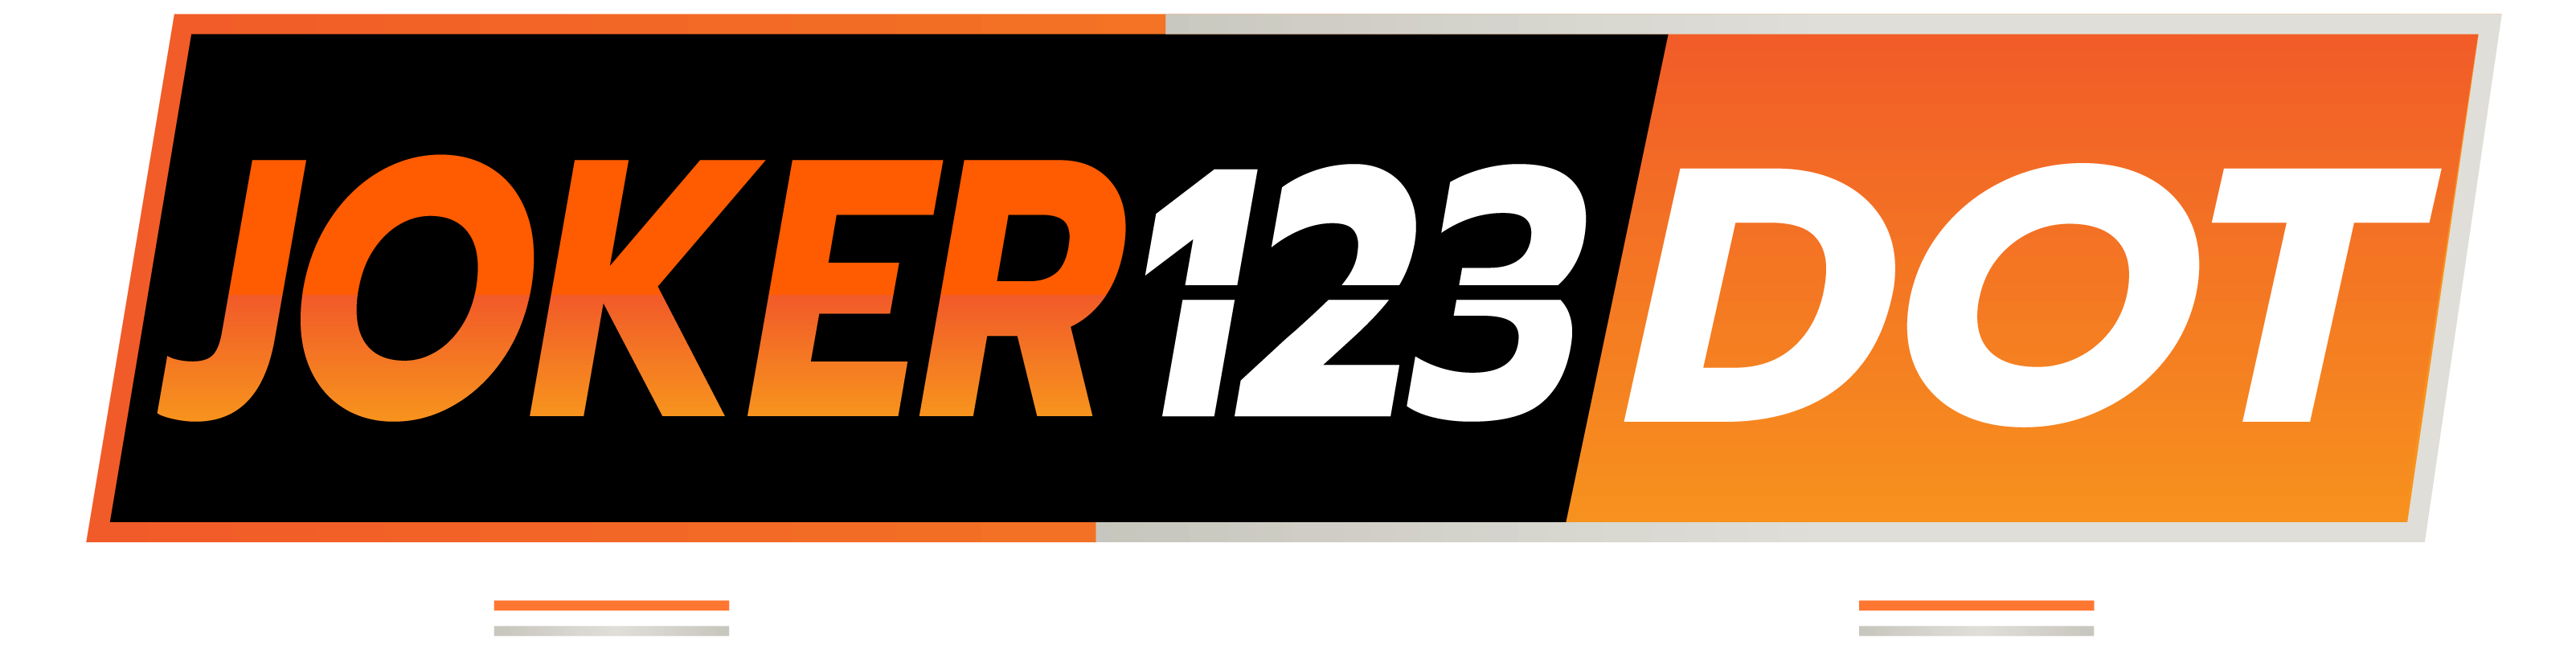 joker123dot